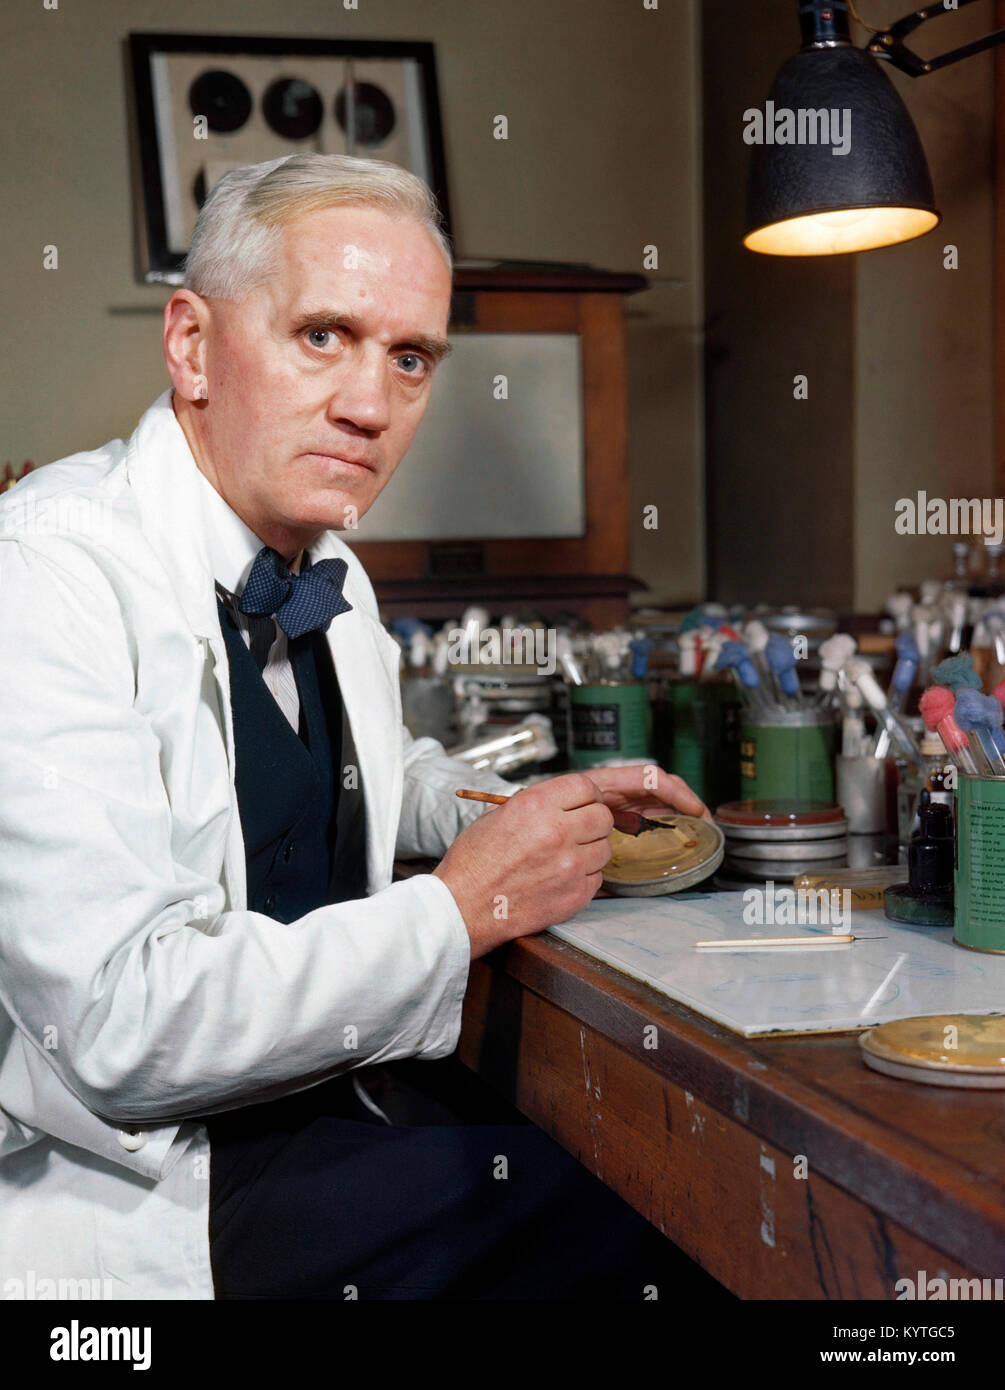 Sir Alexander Fleming (1881-1955), der schottische Wissenschaftler berühmt für die Entdeckung des Penicillins. Foto zwischen 1939 und 1945 berücksichtigt. Stockfoto